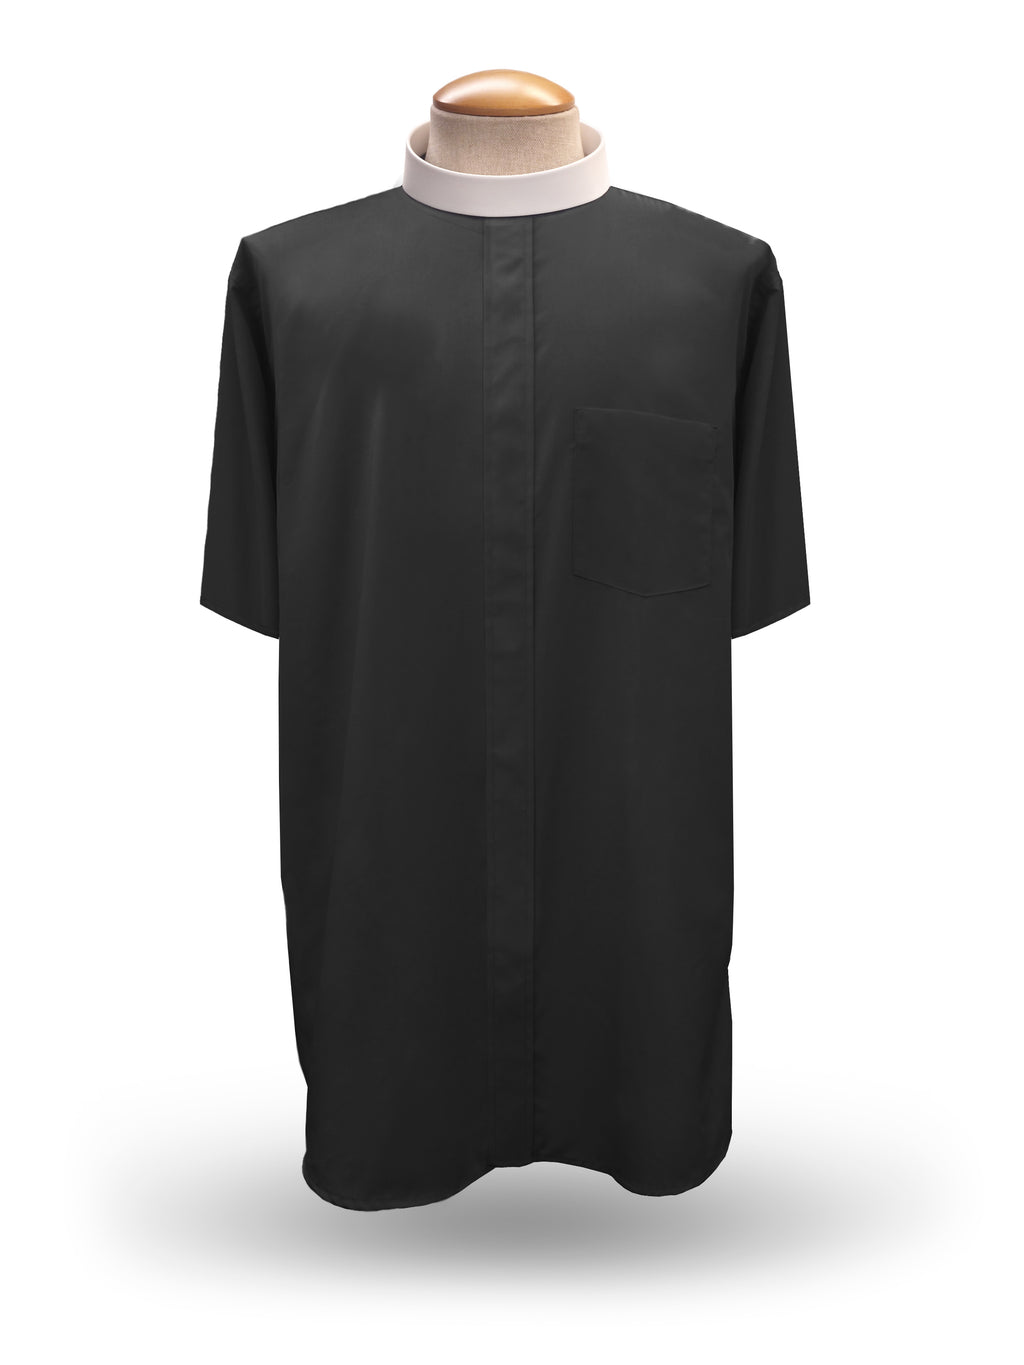 Men's Short Sleeve <br> Neckband Clergy Shirt <br> in Black